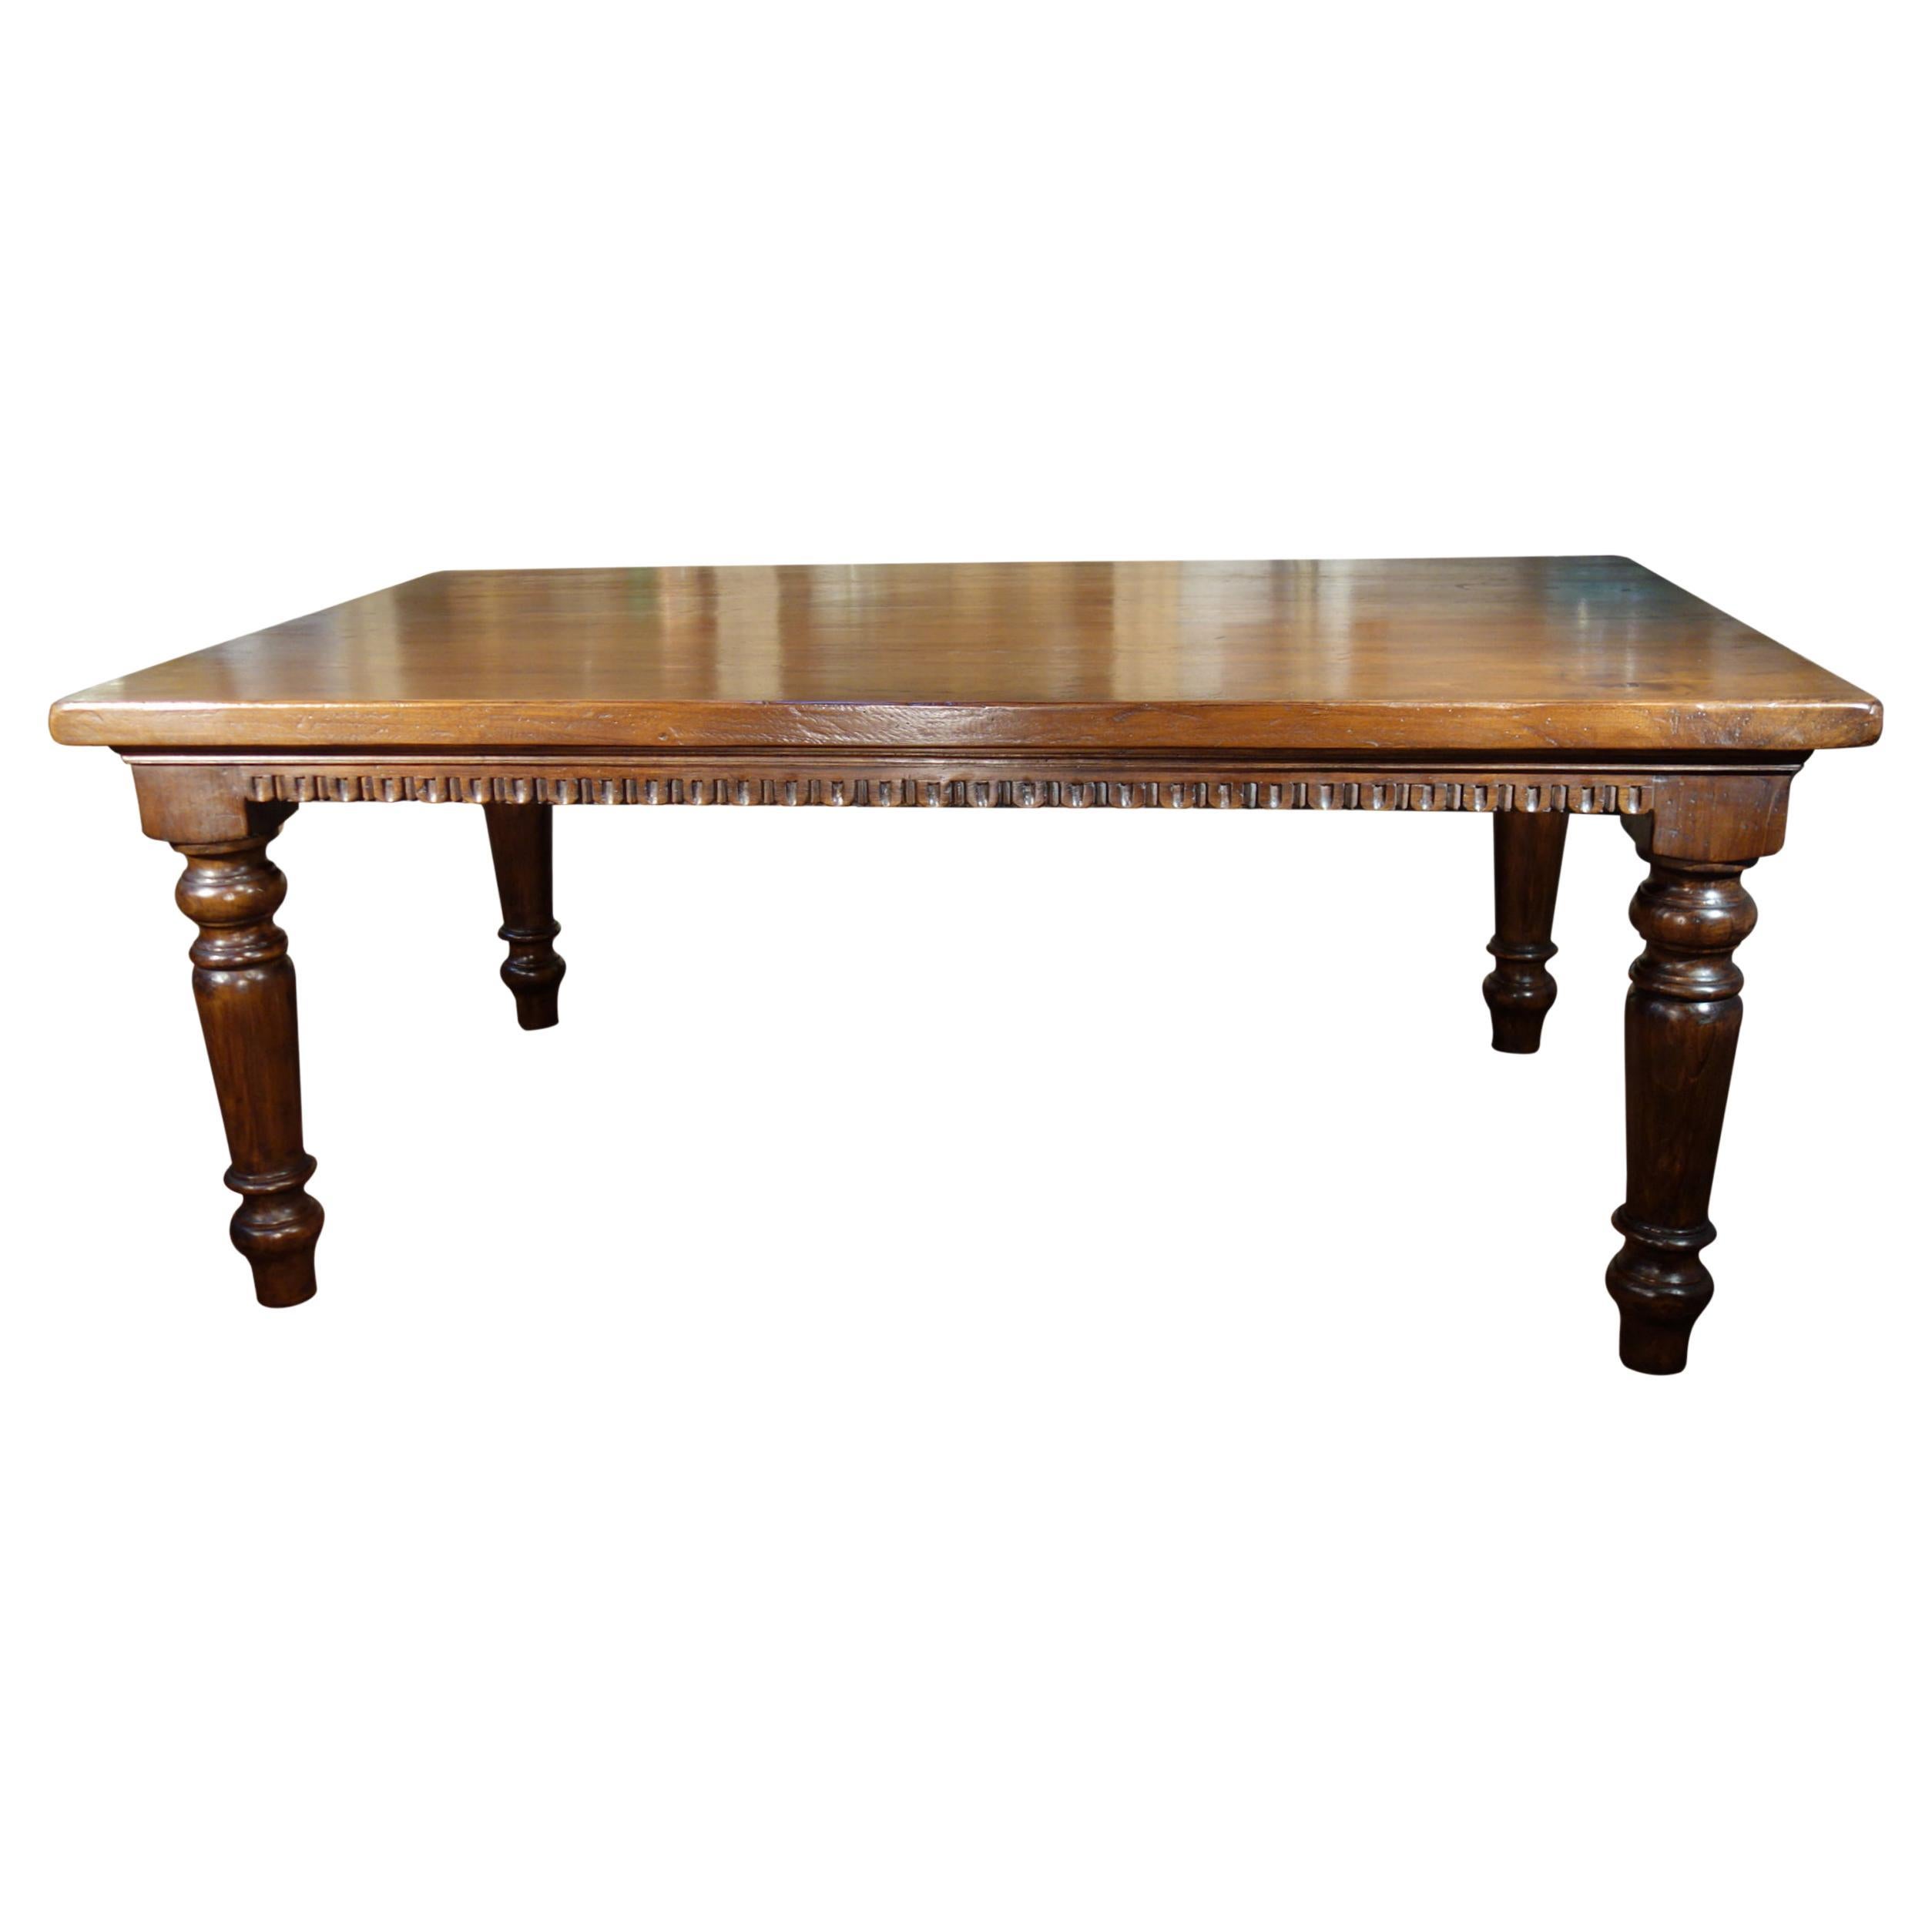 Table en noyer massif de style italien TORINO du 19ème siècle, Renaissance, dentelée, taille personnalisée.